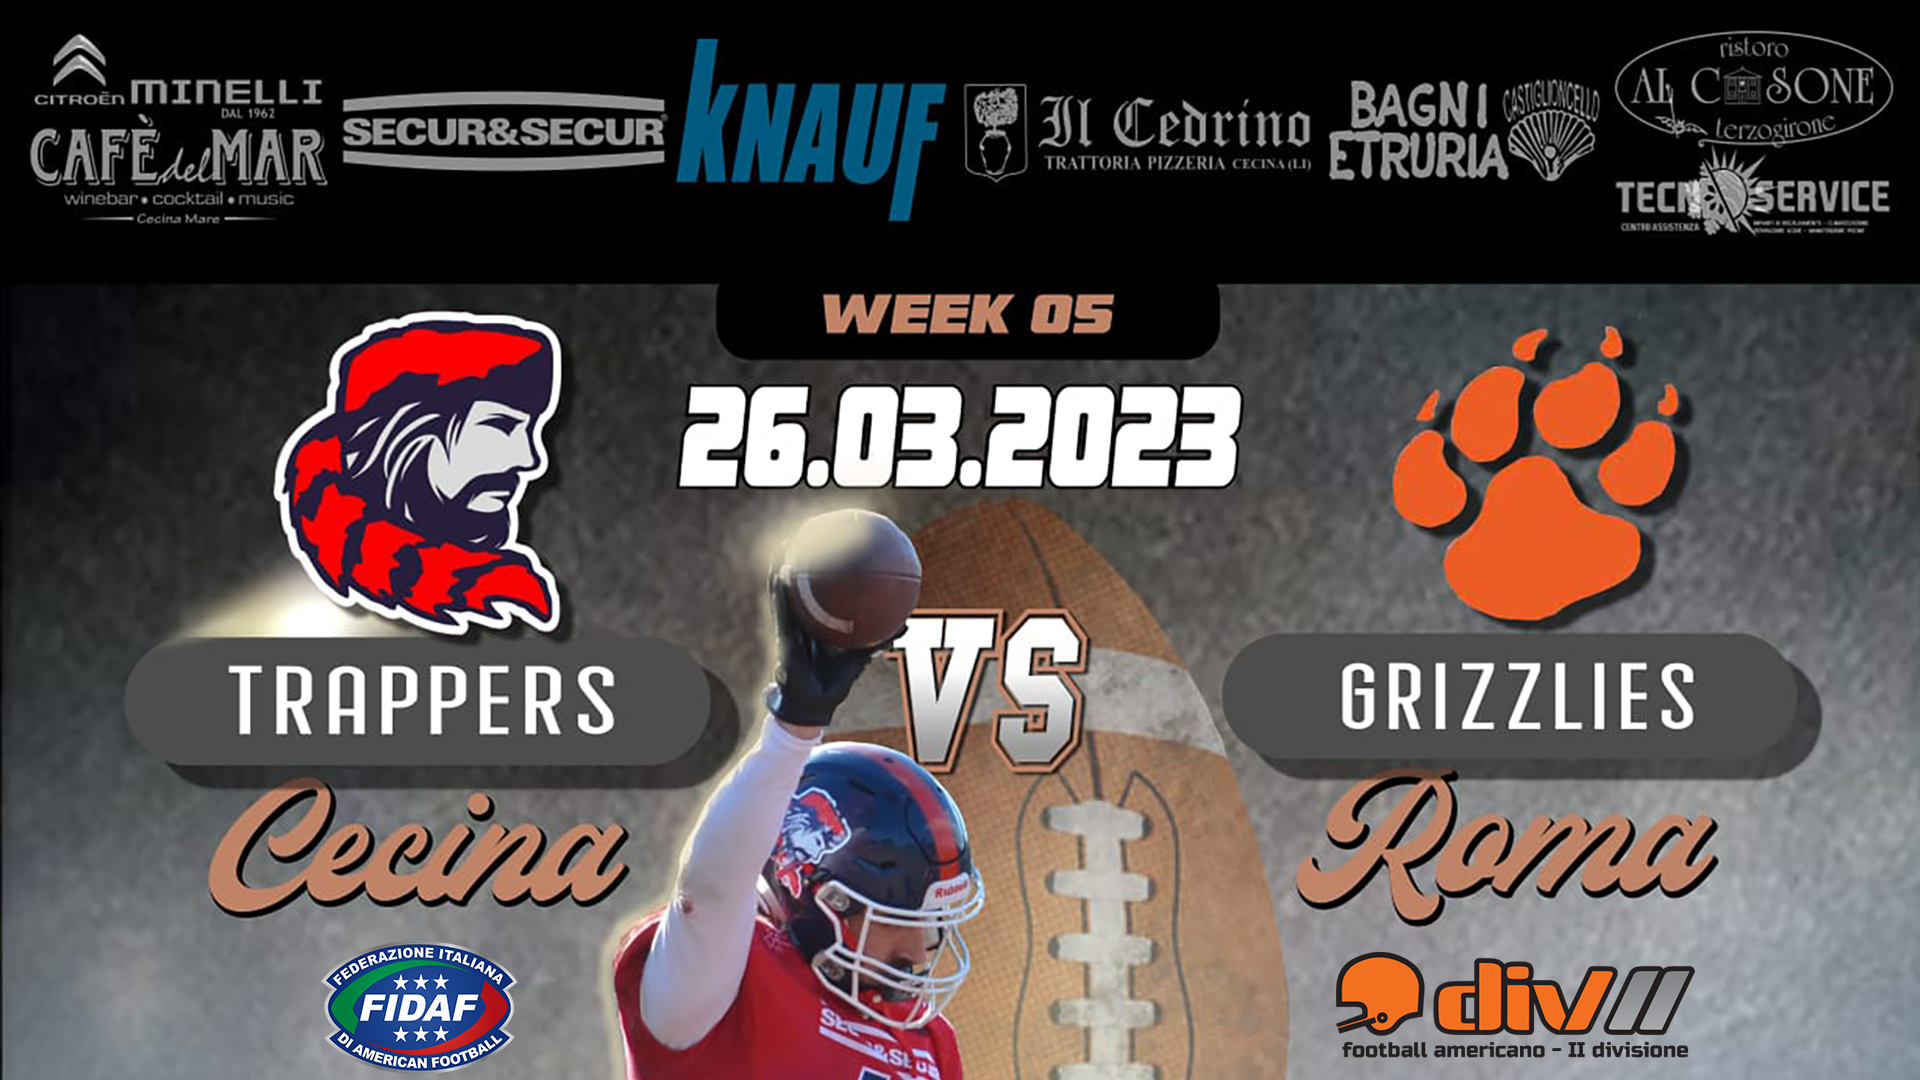 Trappers Cecina vs Grizzlies Roma